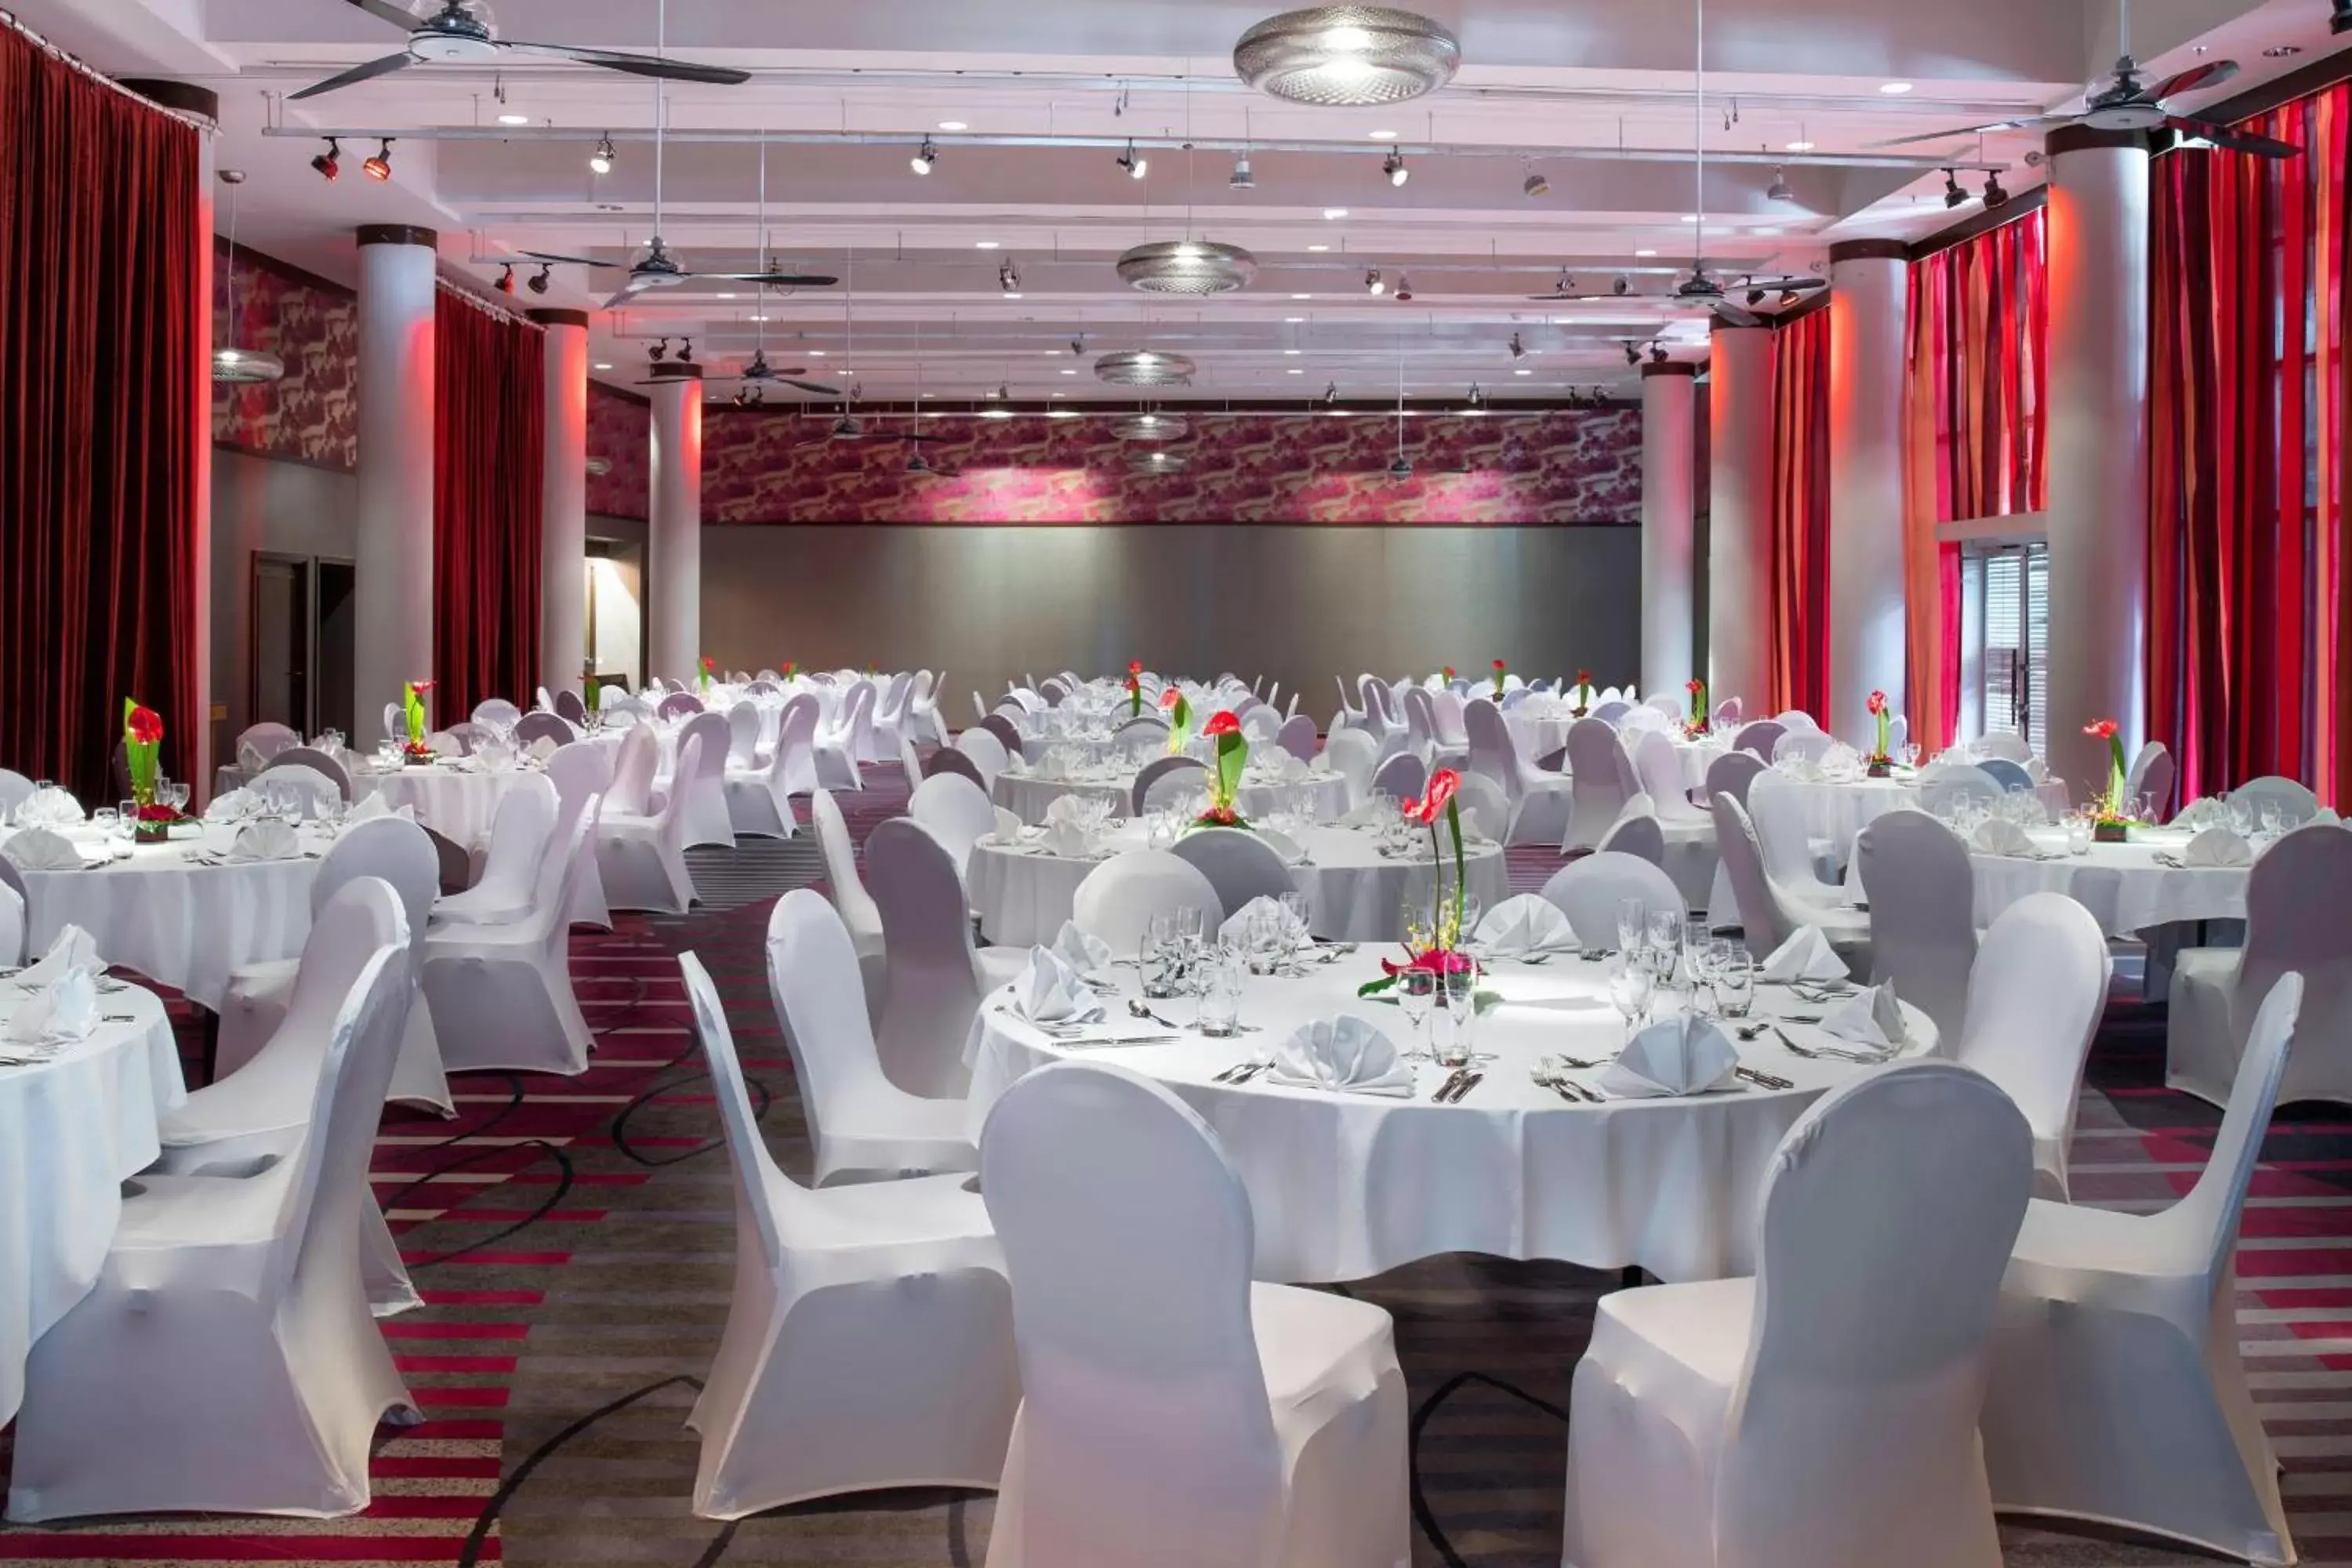 Meeting/conference room, Banquet Facilities in Le Méridien Nouméa Resort & Spa